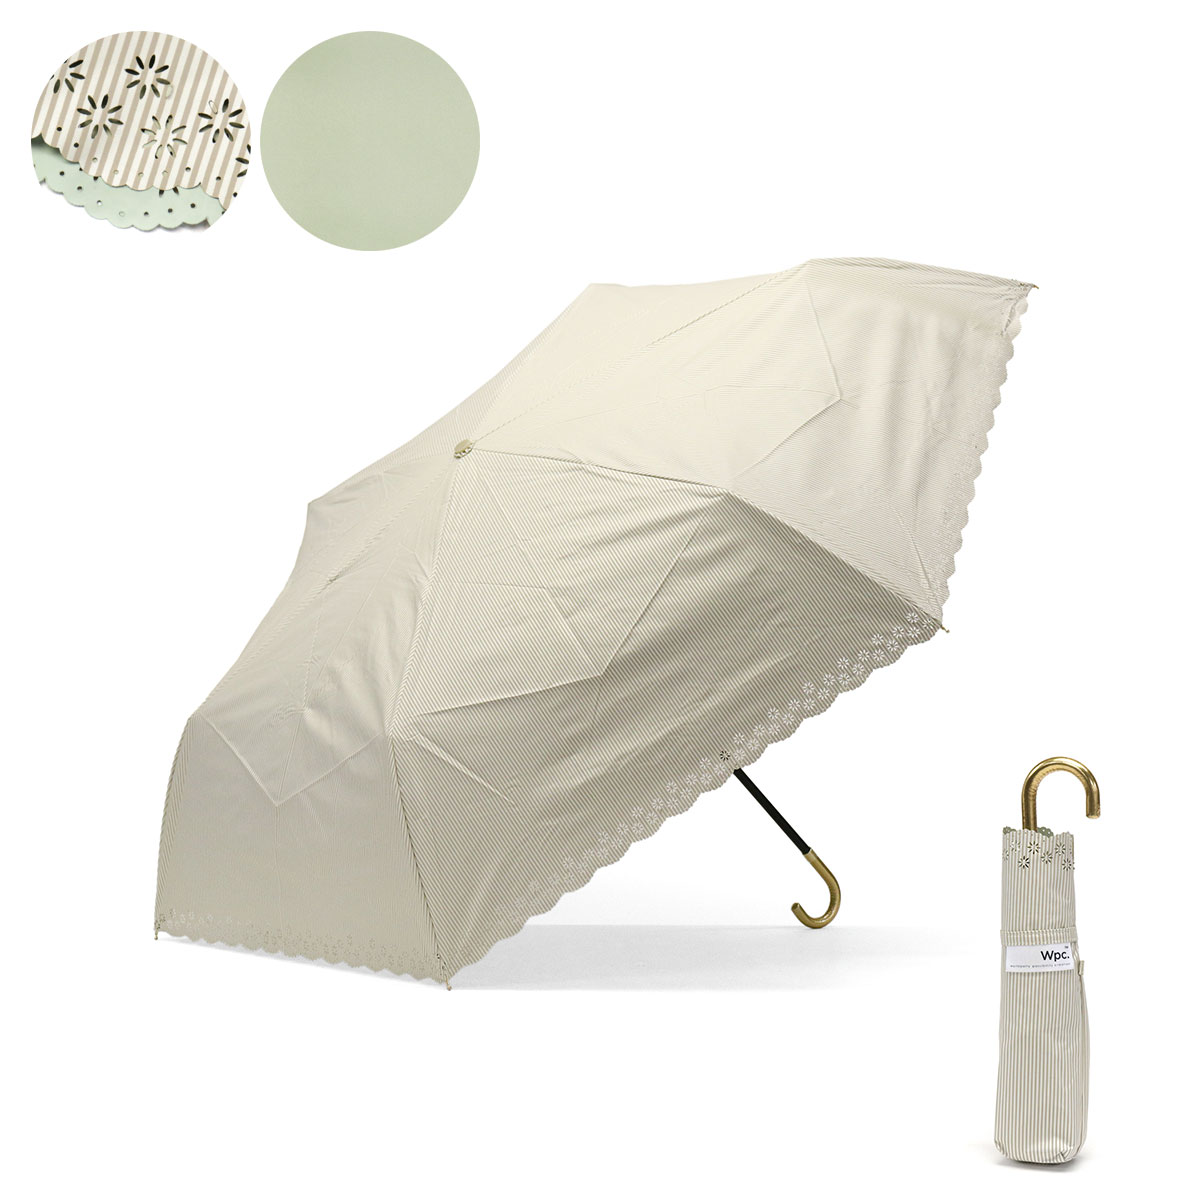 ダブリュピーシー 日傘 Wpc. Wpc 遮光フラワーカットストライプ 雨傘 折り畳み傘 晴雨兼用 ...